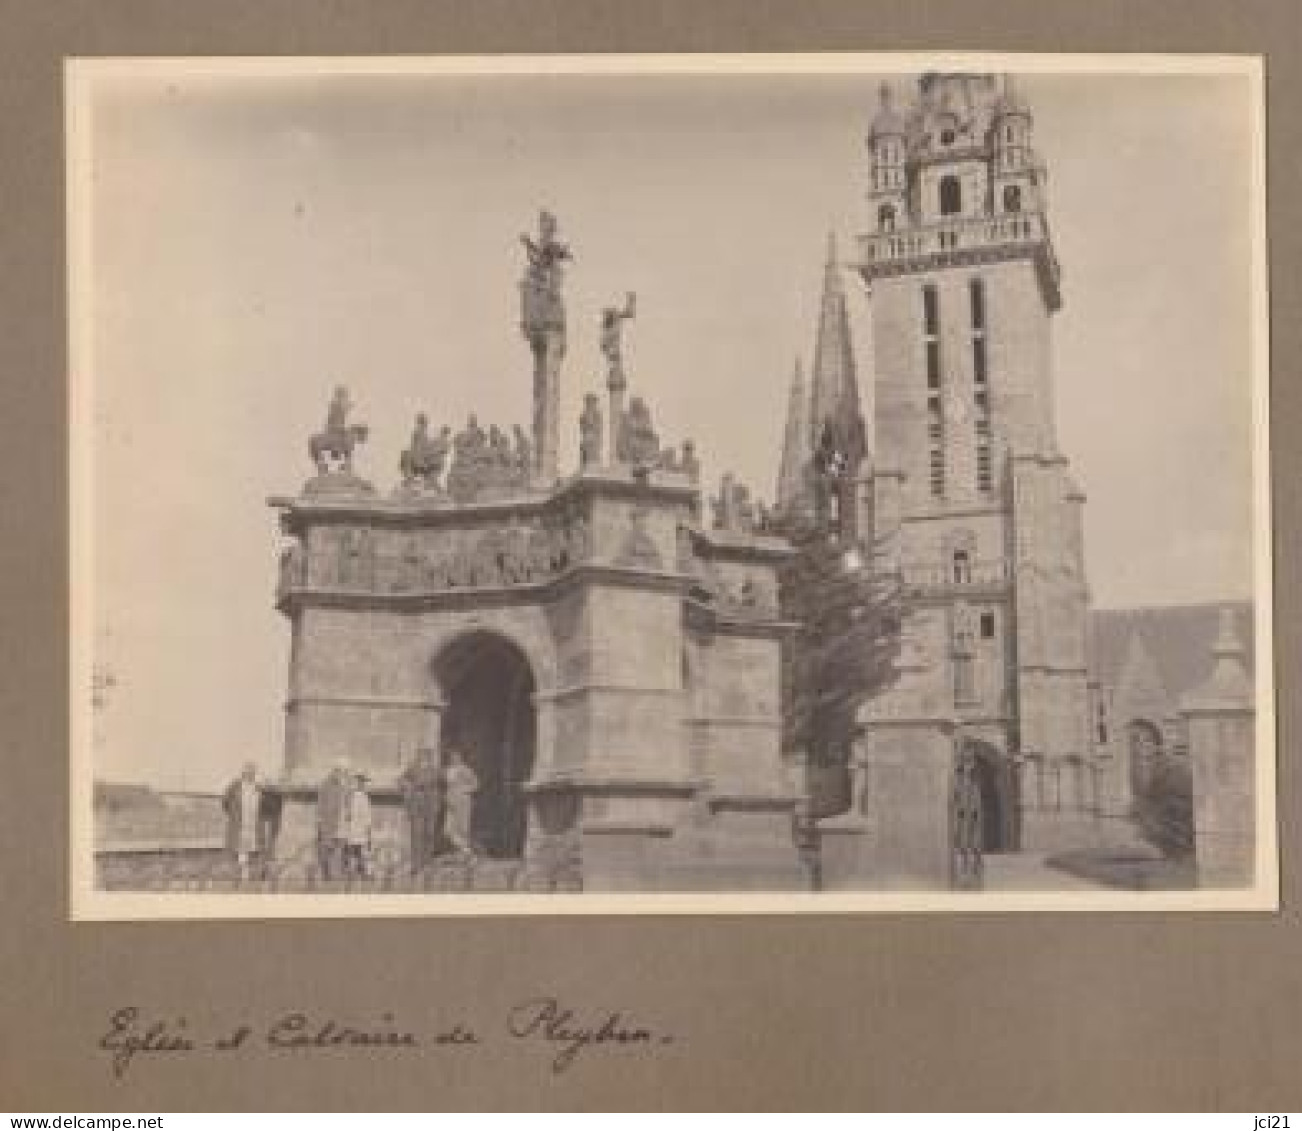 2 PHOTOS ORIGINALES " Eglise Et Calvaire De Pleyben Et Calvaire De Tronoan " 1928/29 " " PHOT099A ET B - Luoghi